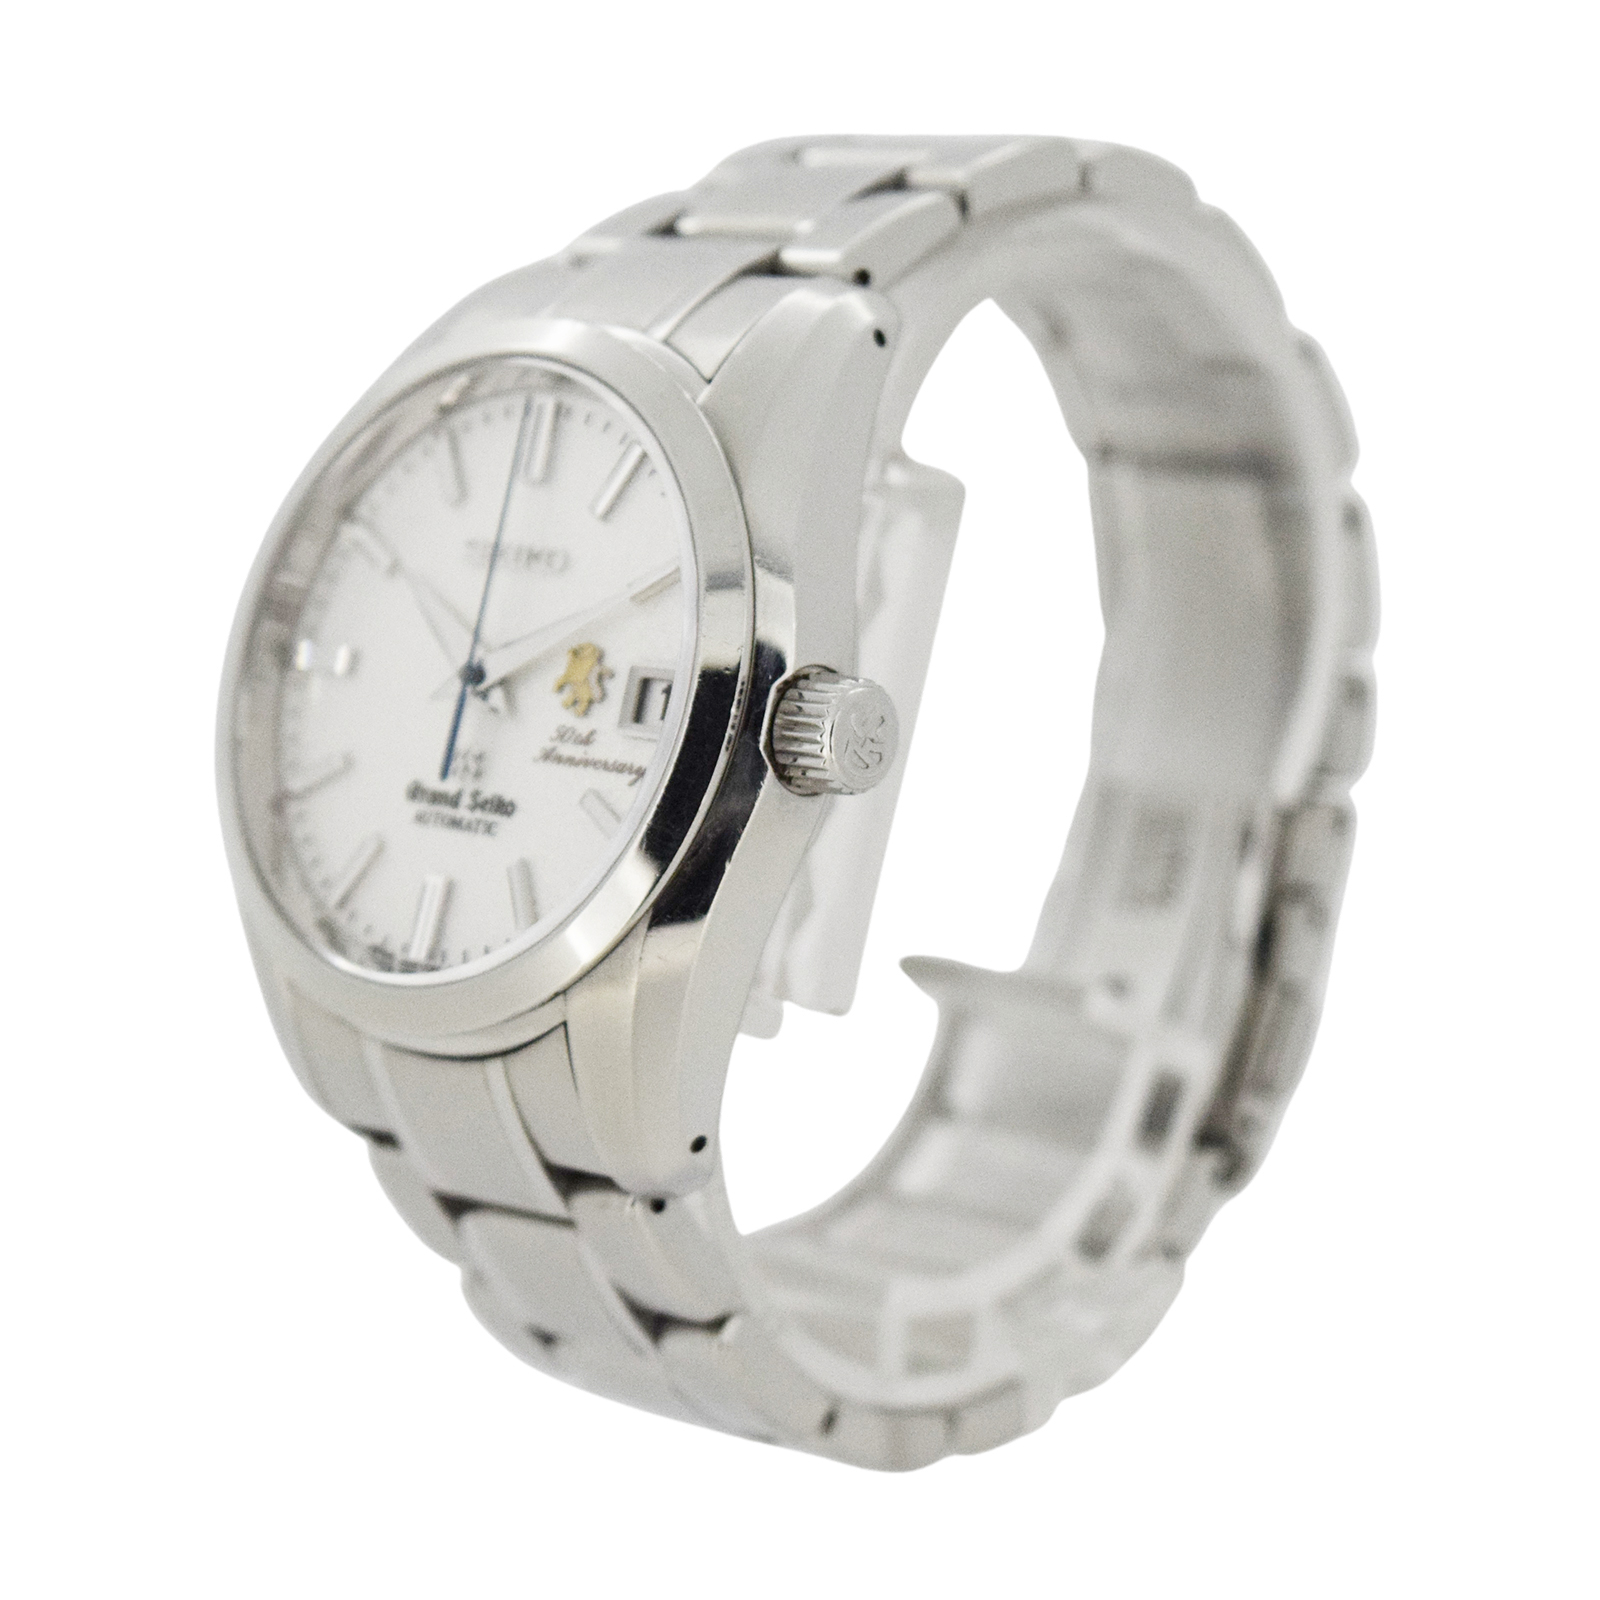 50周年記念  限定500本 SEIKO セイコー  グランドセイコーメカニカル  SBGR065 9S65-00E0  メンズ 腕時計